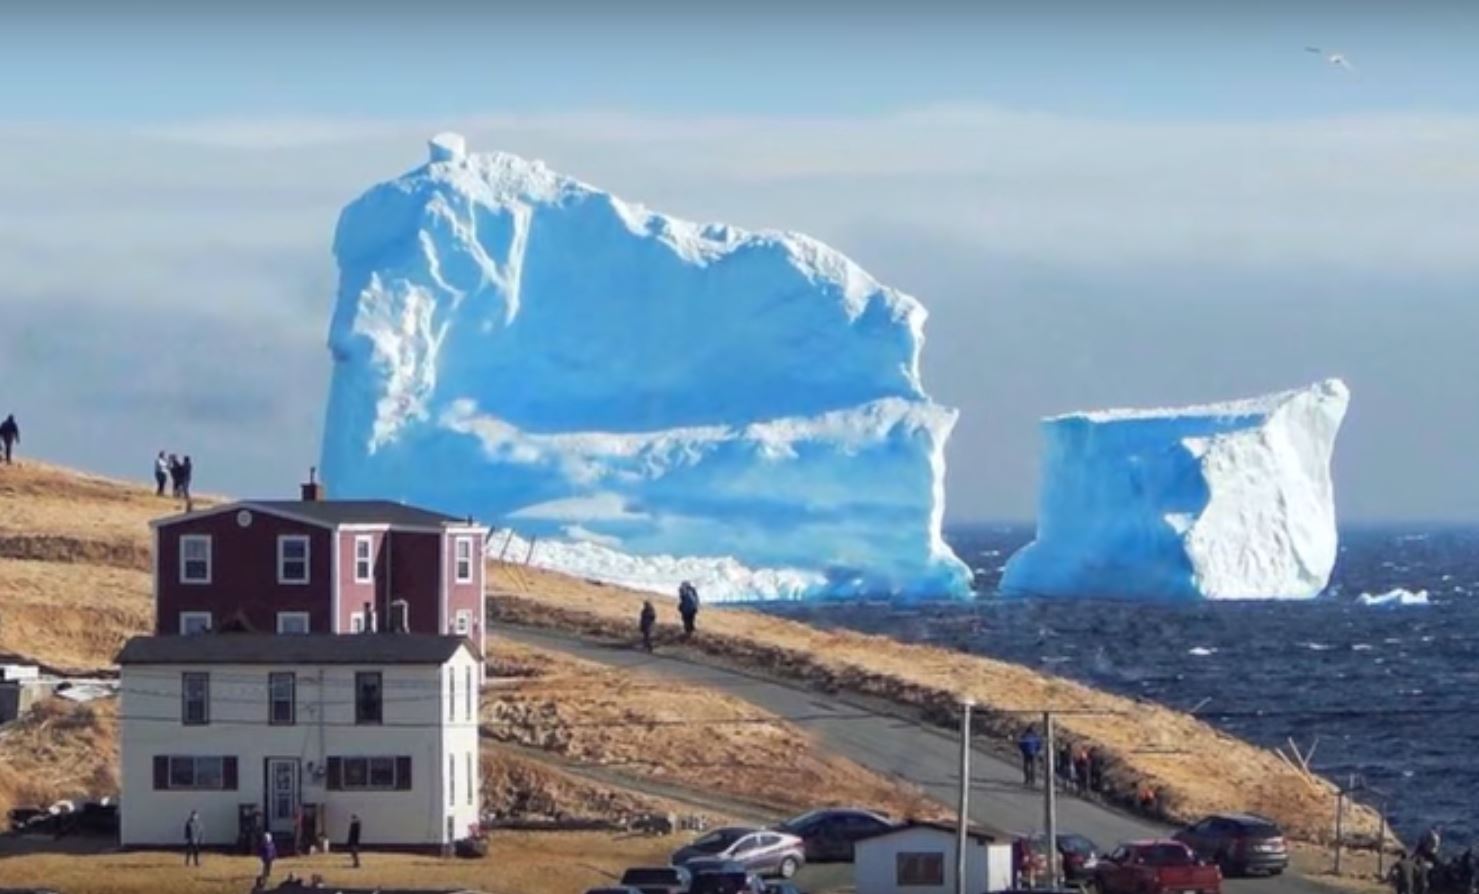 L'iceberg mesure plus de 40 mètres de haut et impressionne les curieux venus en masse.